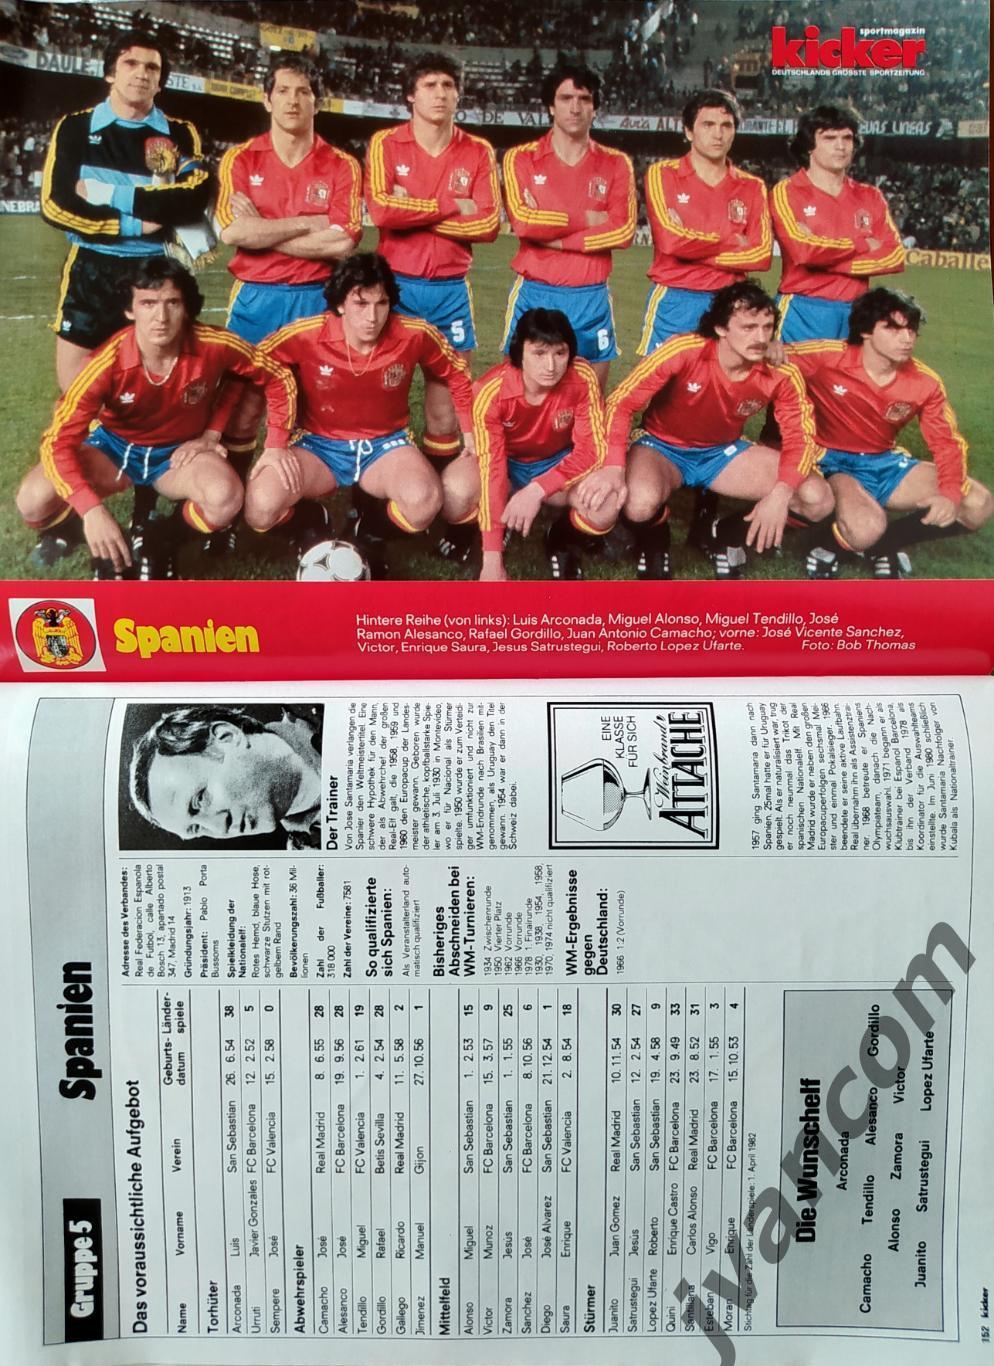 KICKER SONDERHEFT. Чемпионат Мира по футболу 1982 года. Превью участников. 4